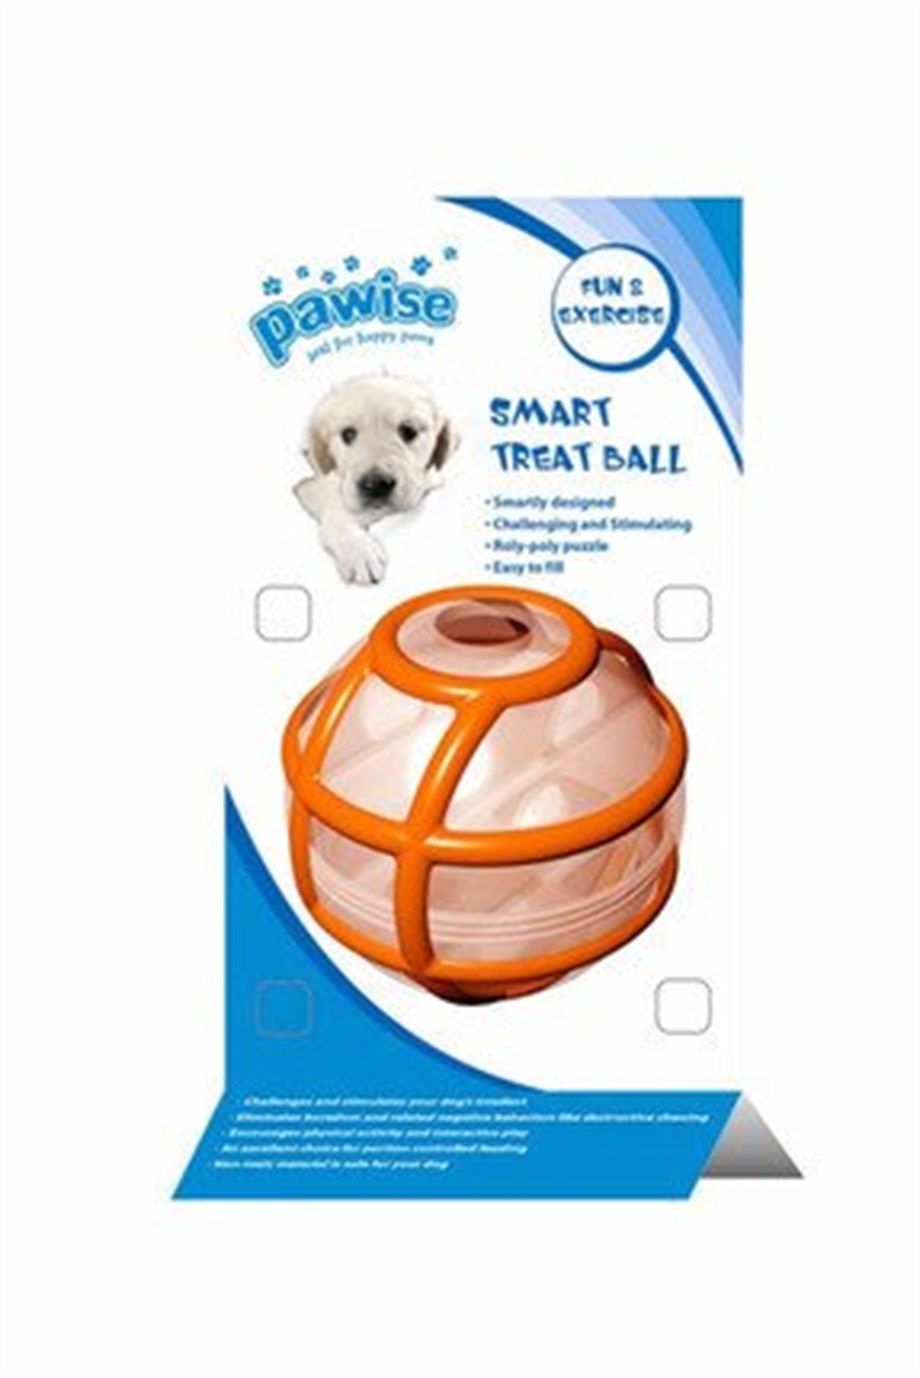 Pawise Smart Treat Top Köpek Oyuncağı - Eğitim ve Zeka Geliştirici  Oyuncaklar